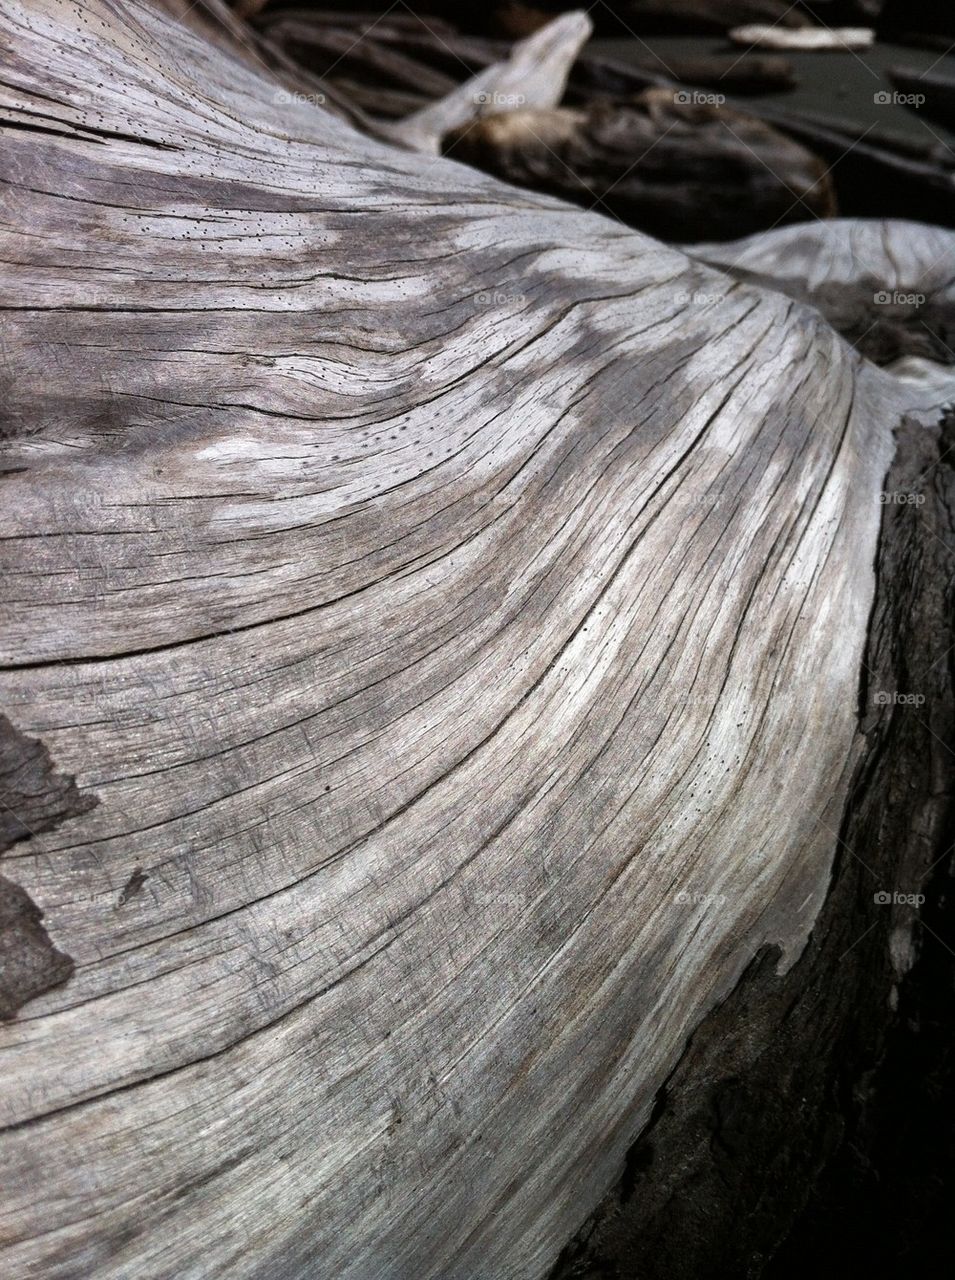 Beach log close-up